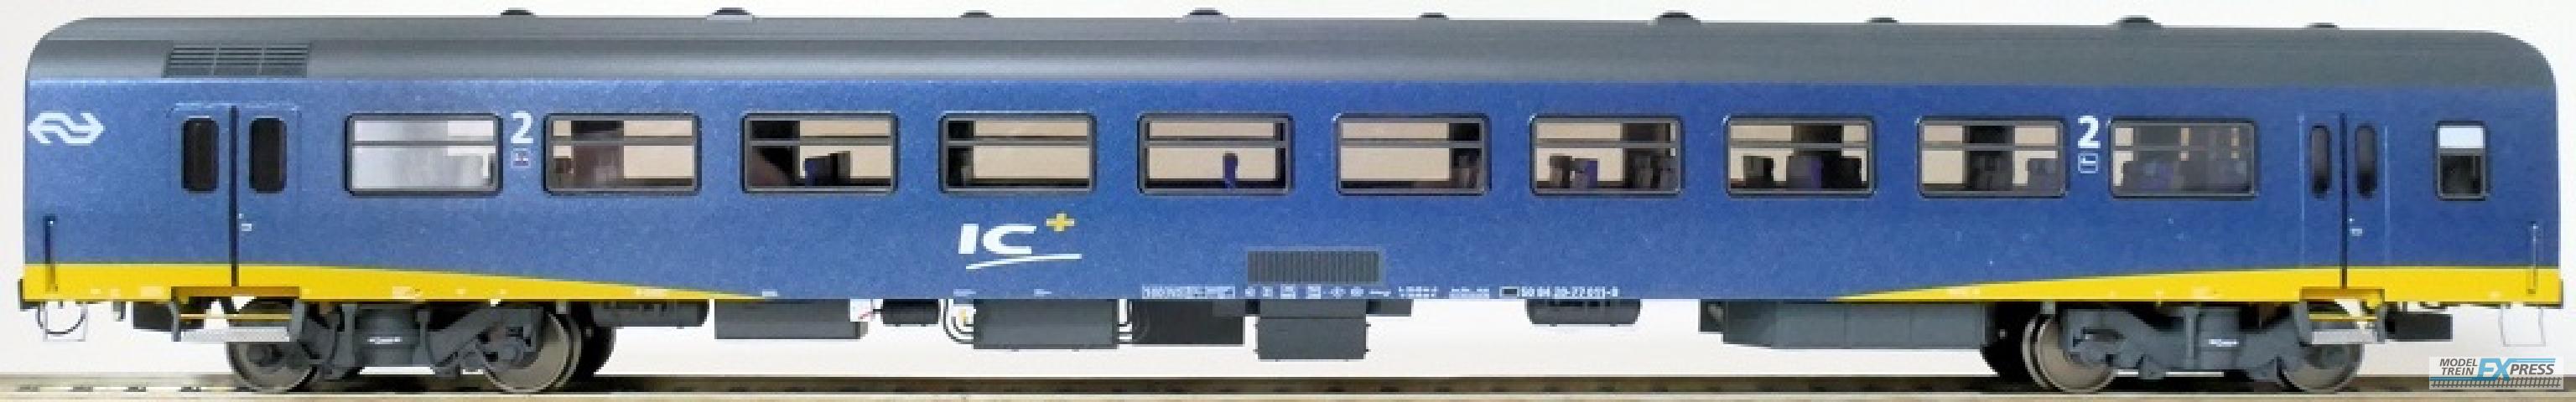 Exact-train 11178 NS ICR Plus Reisezugwagen B ( Farbe Blau) mit Beleuchtung und Figuren, Ep. IV